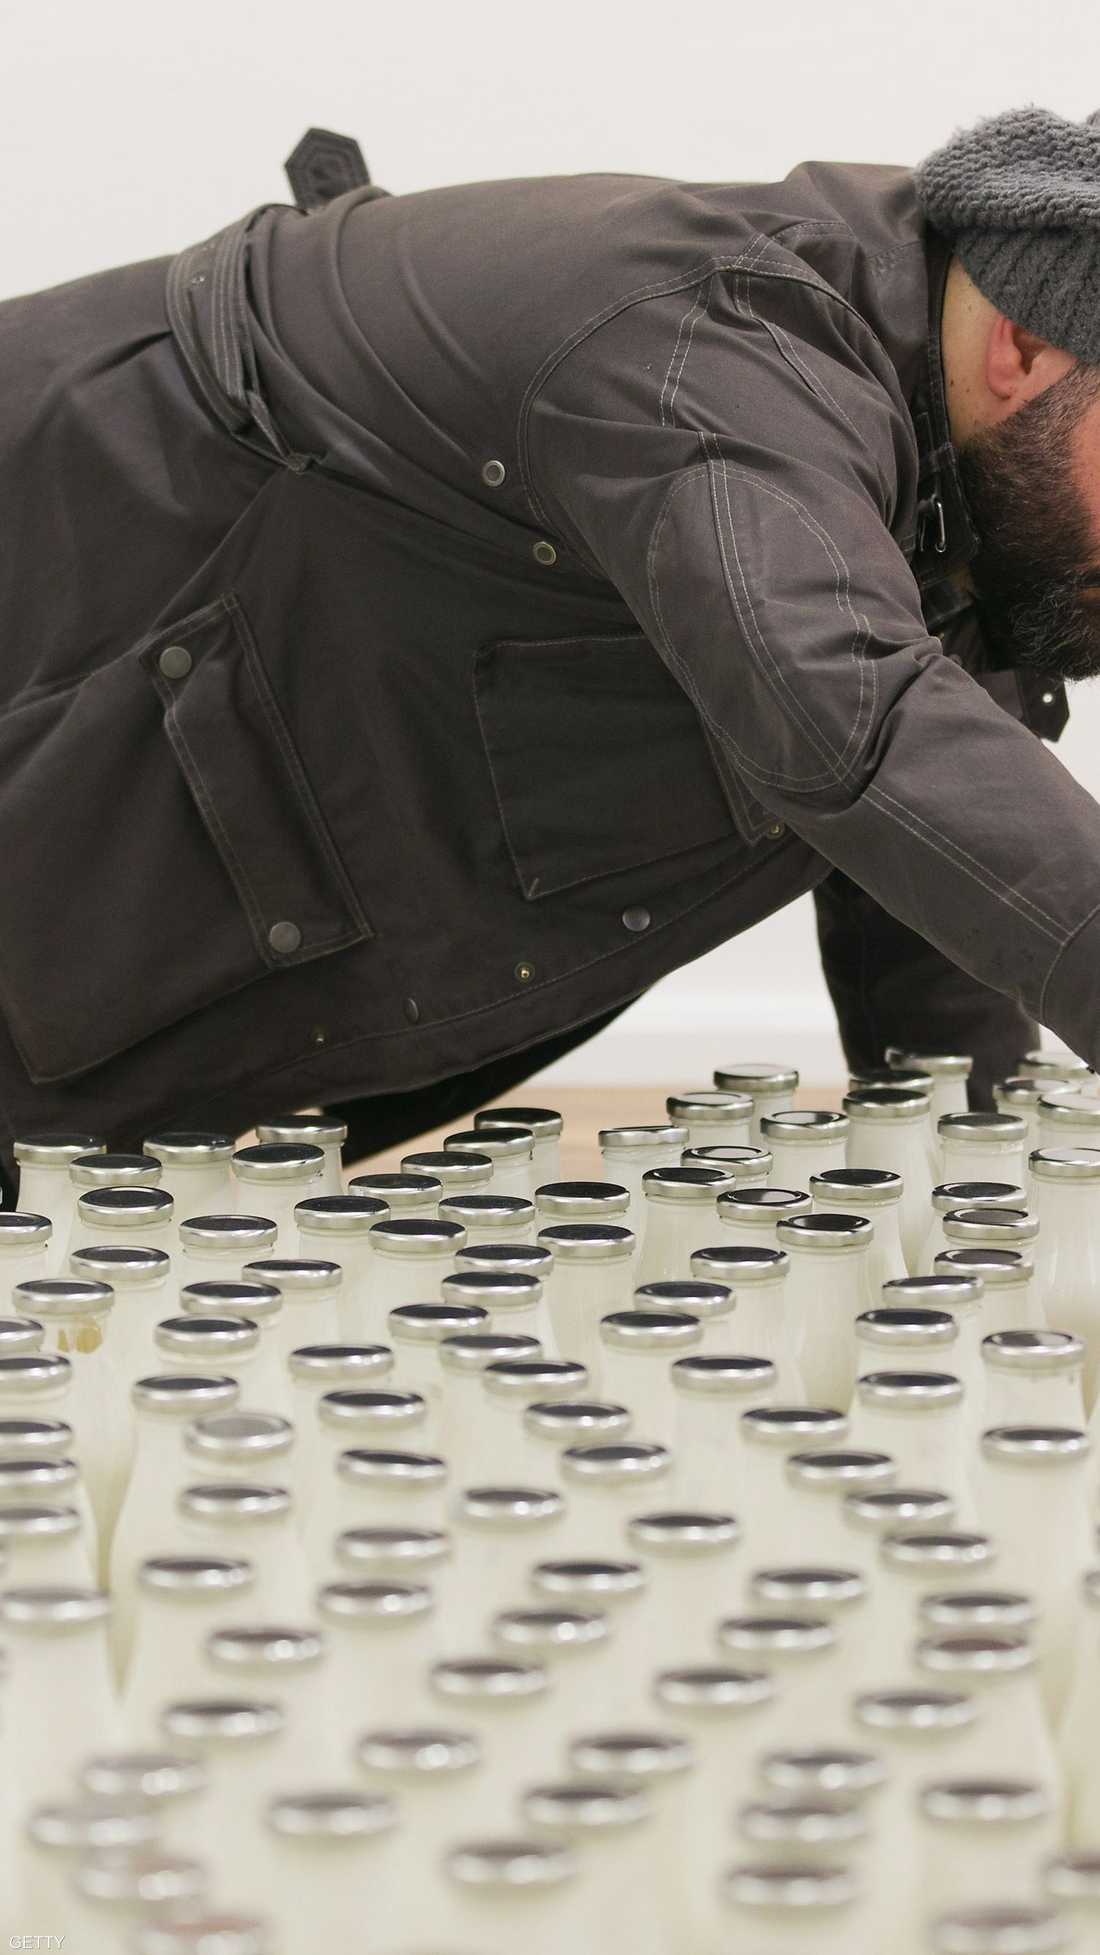 الفنان السوري، إبراهيم فخري، قال إن استخدام زجاجات الحليب يهدف إلى تقريب صورة الوضع في سوريا إلى أذهان البريطانيين 